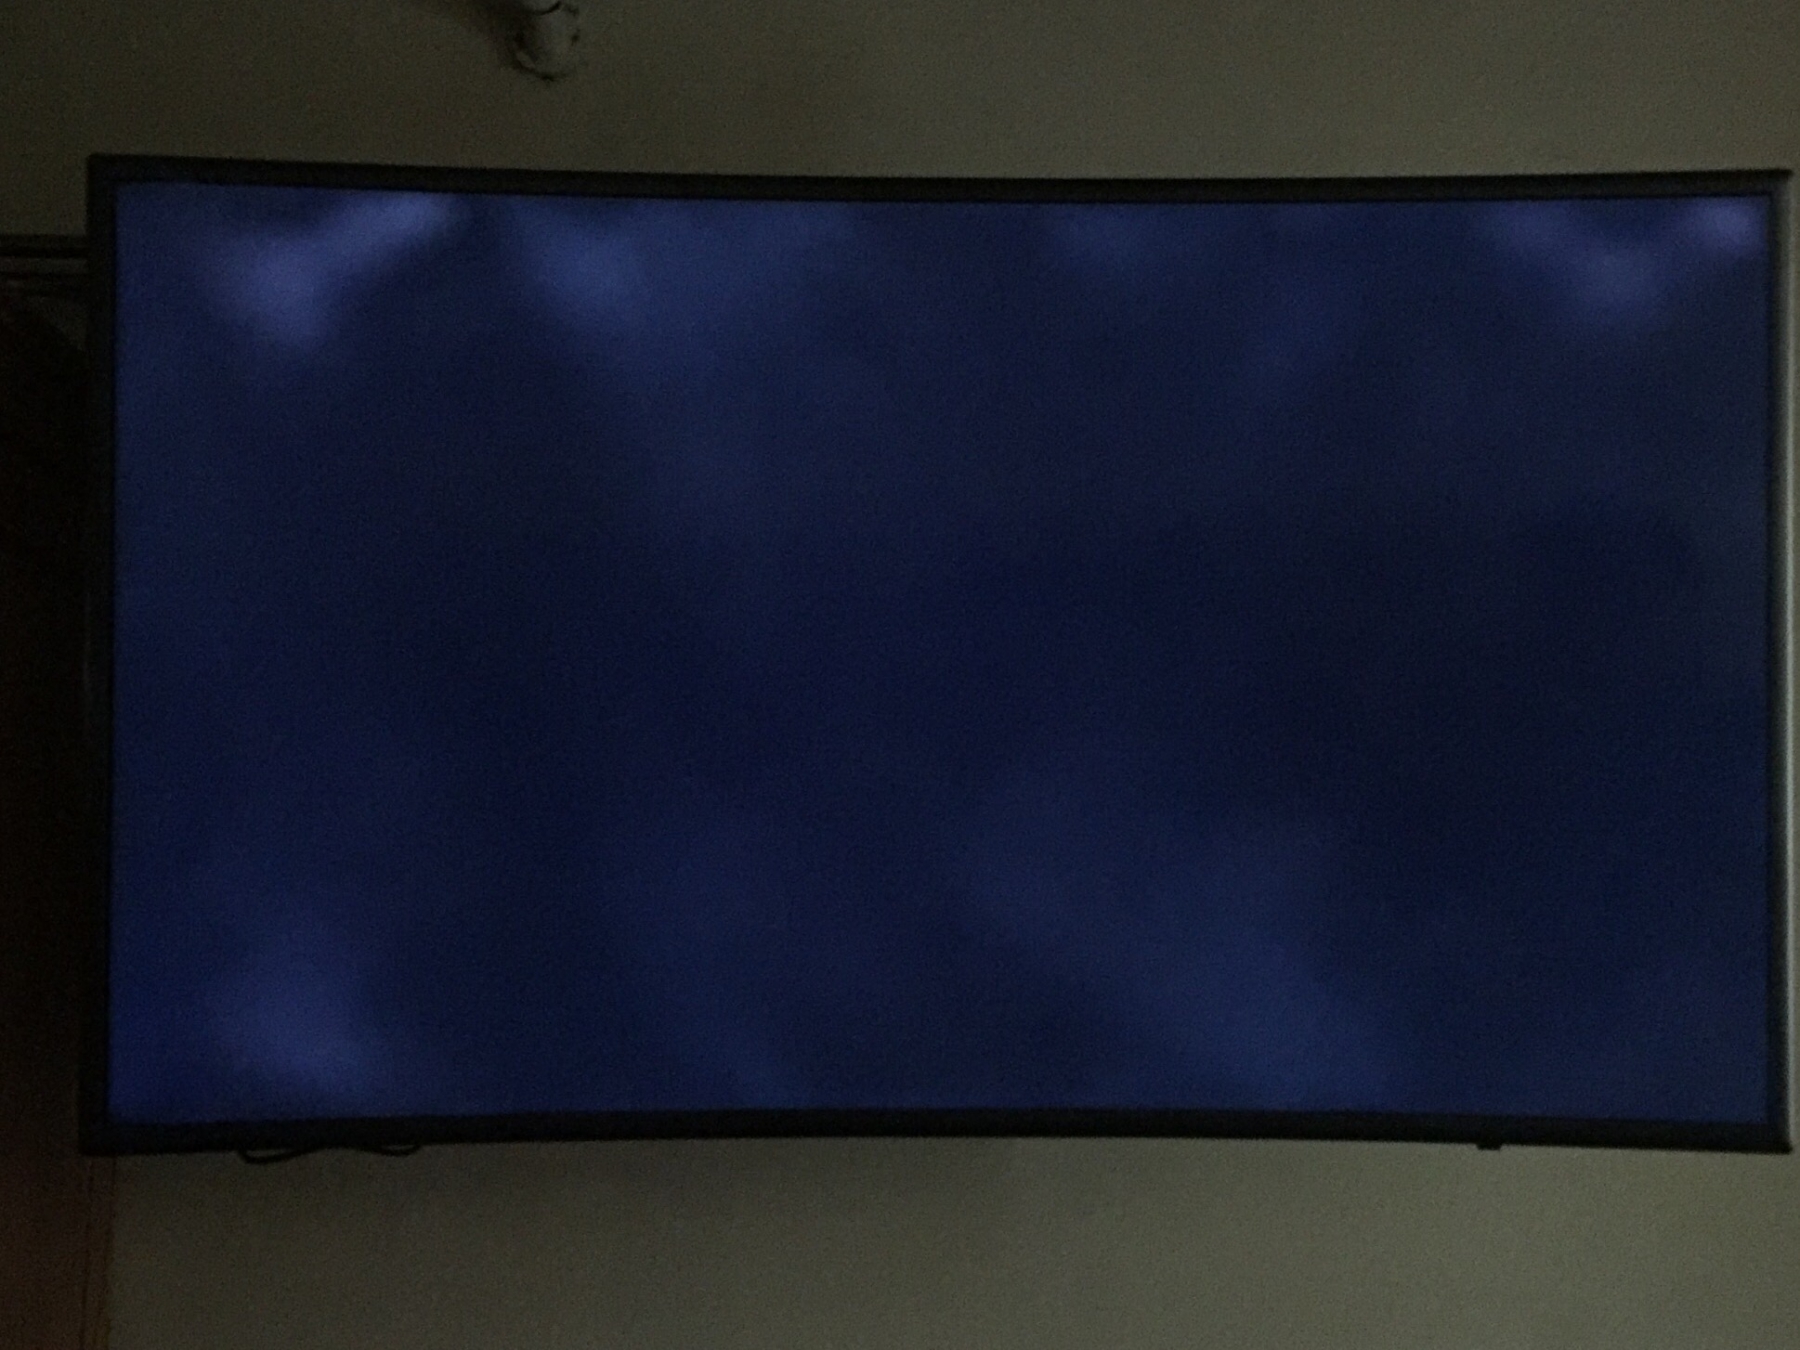 Một số nguyên nhân dẫn tới màn hình tivi Samsung bị tối đen và cách khắc phục